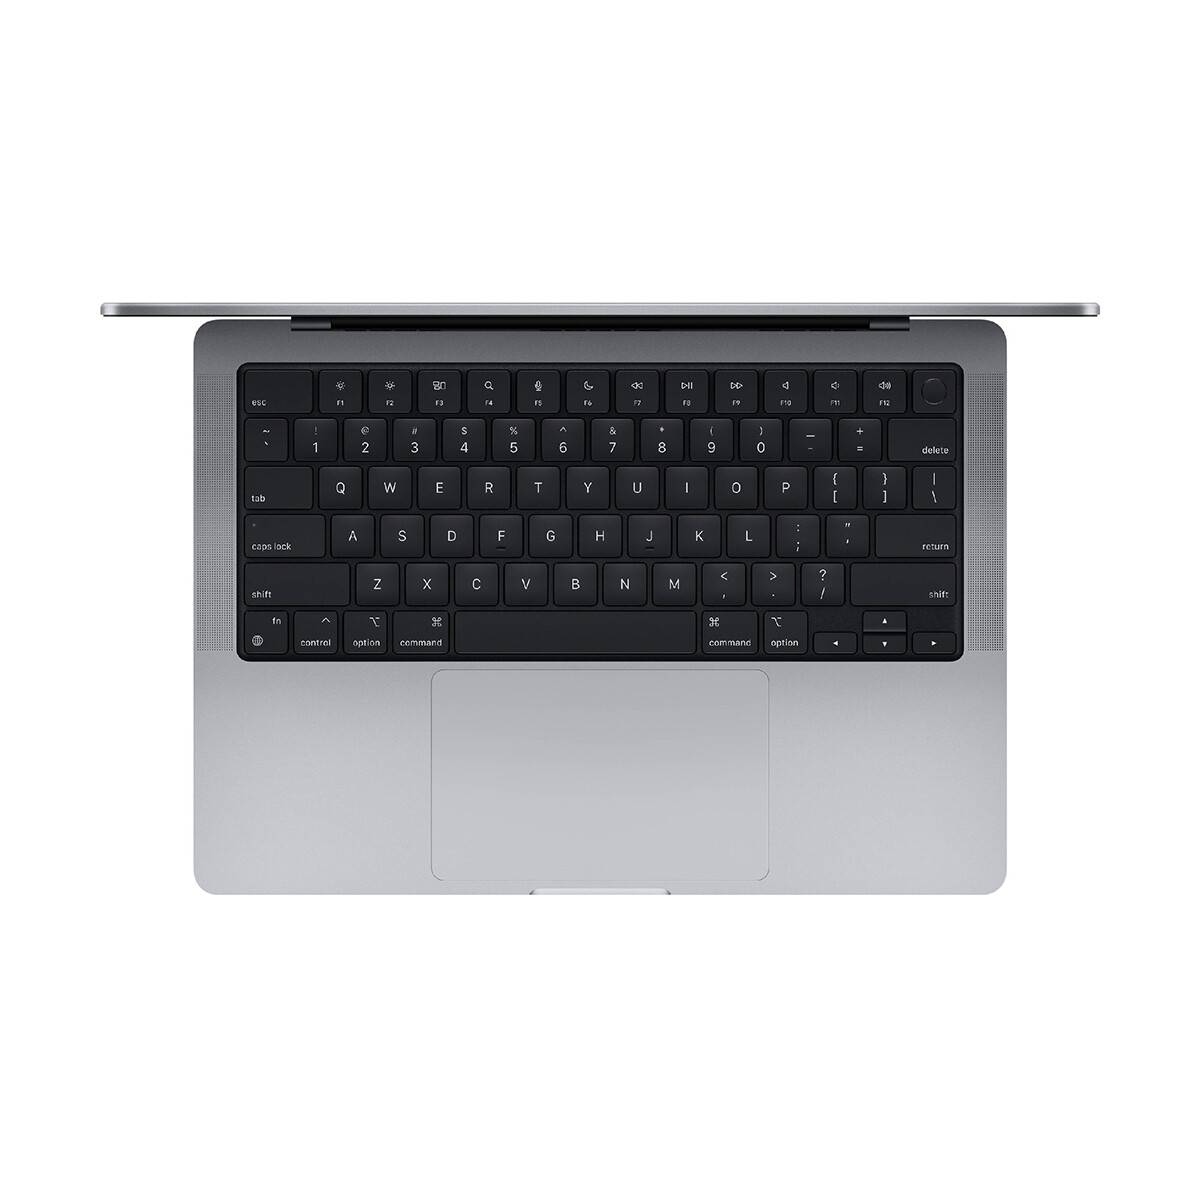 Macbook pro m1 pro 14.2' 1tb / 16gb ram 2021 Space gray